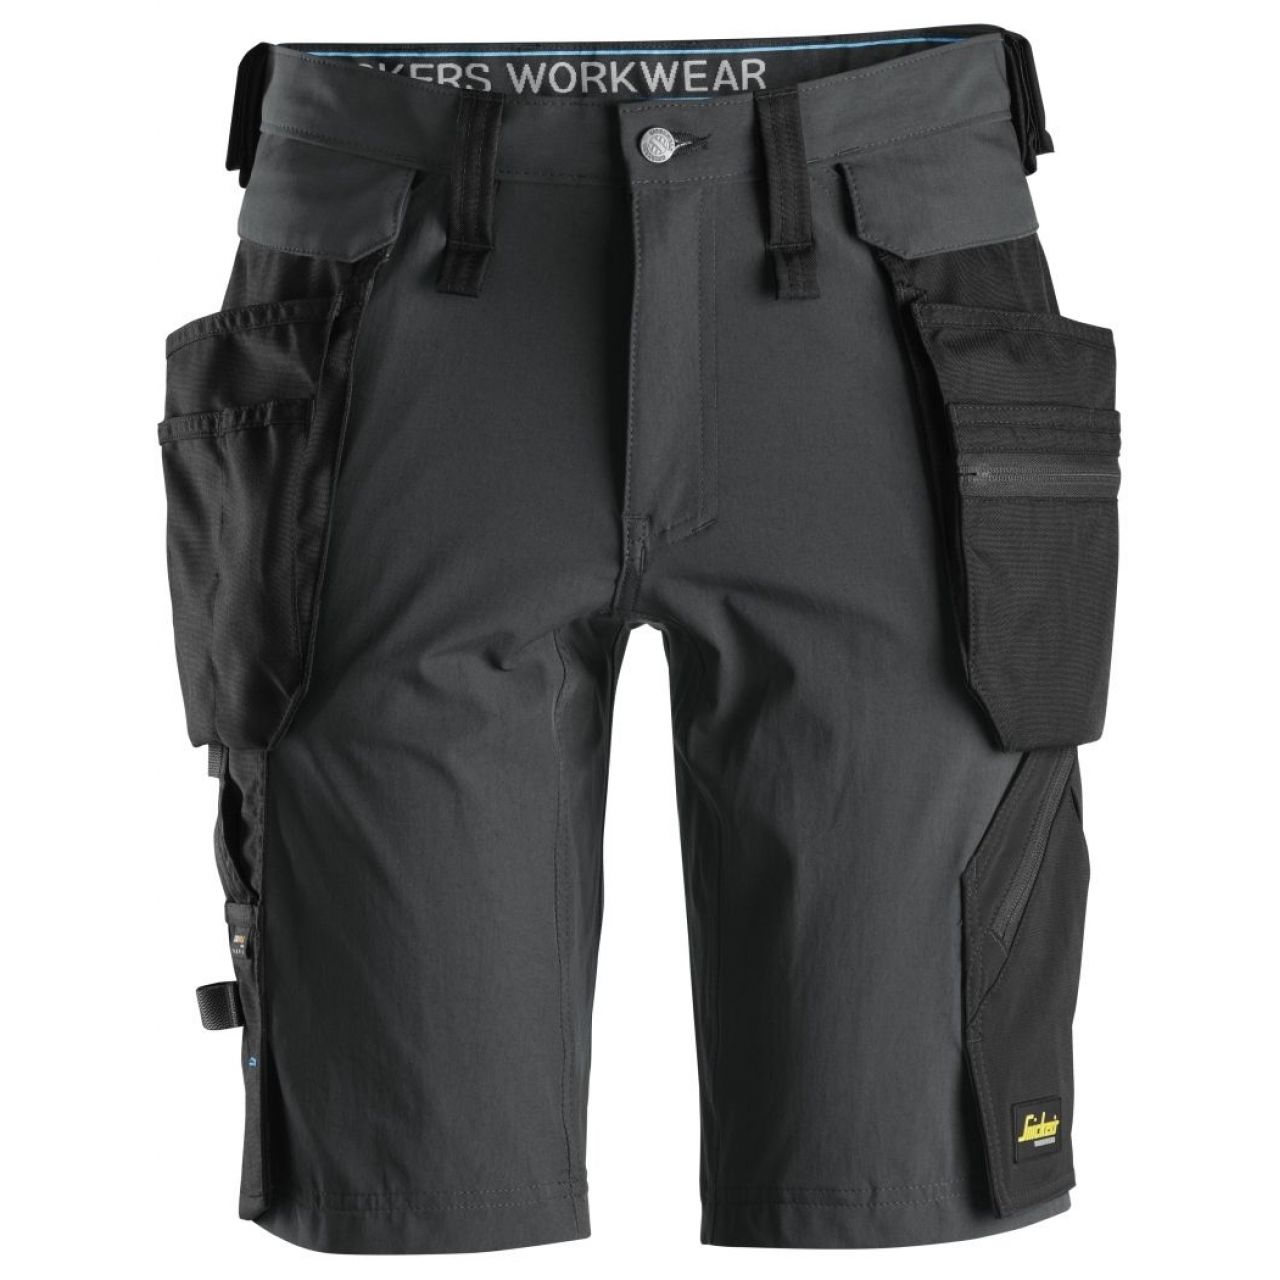 Pantalon corto + bolsillos flotantes desmontables LiteWork gris acero-negro talla 048